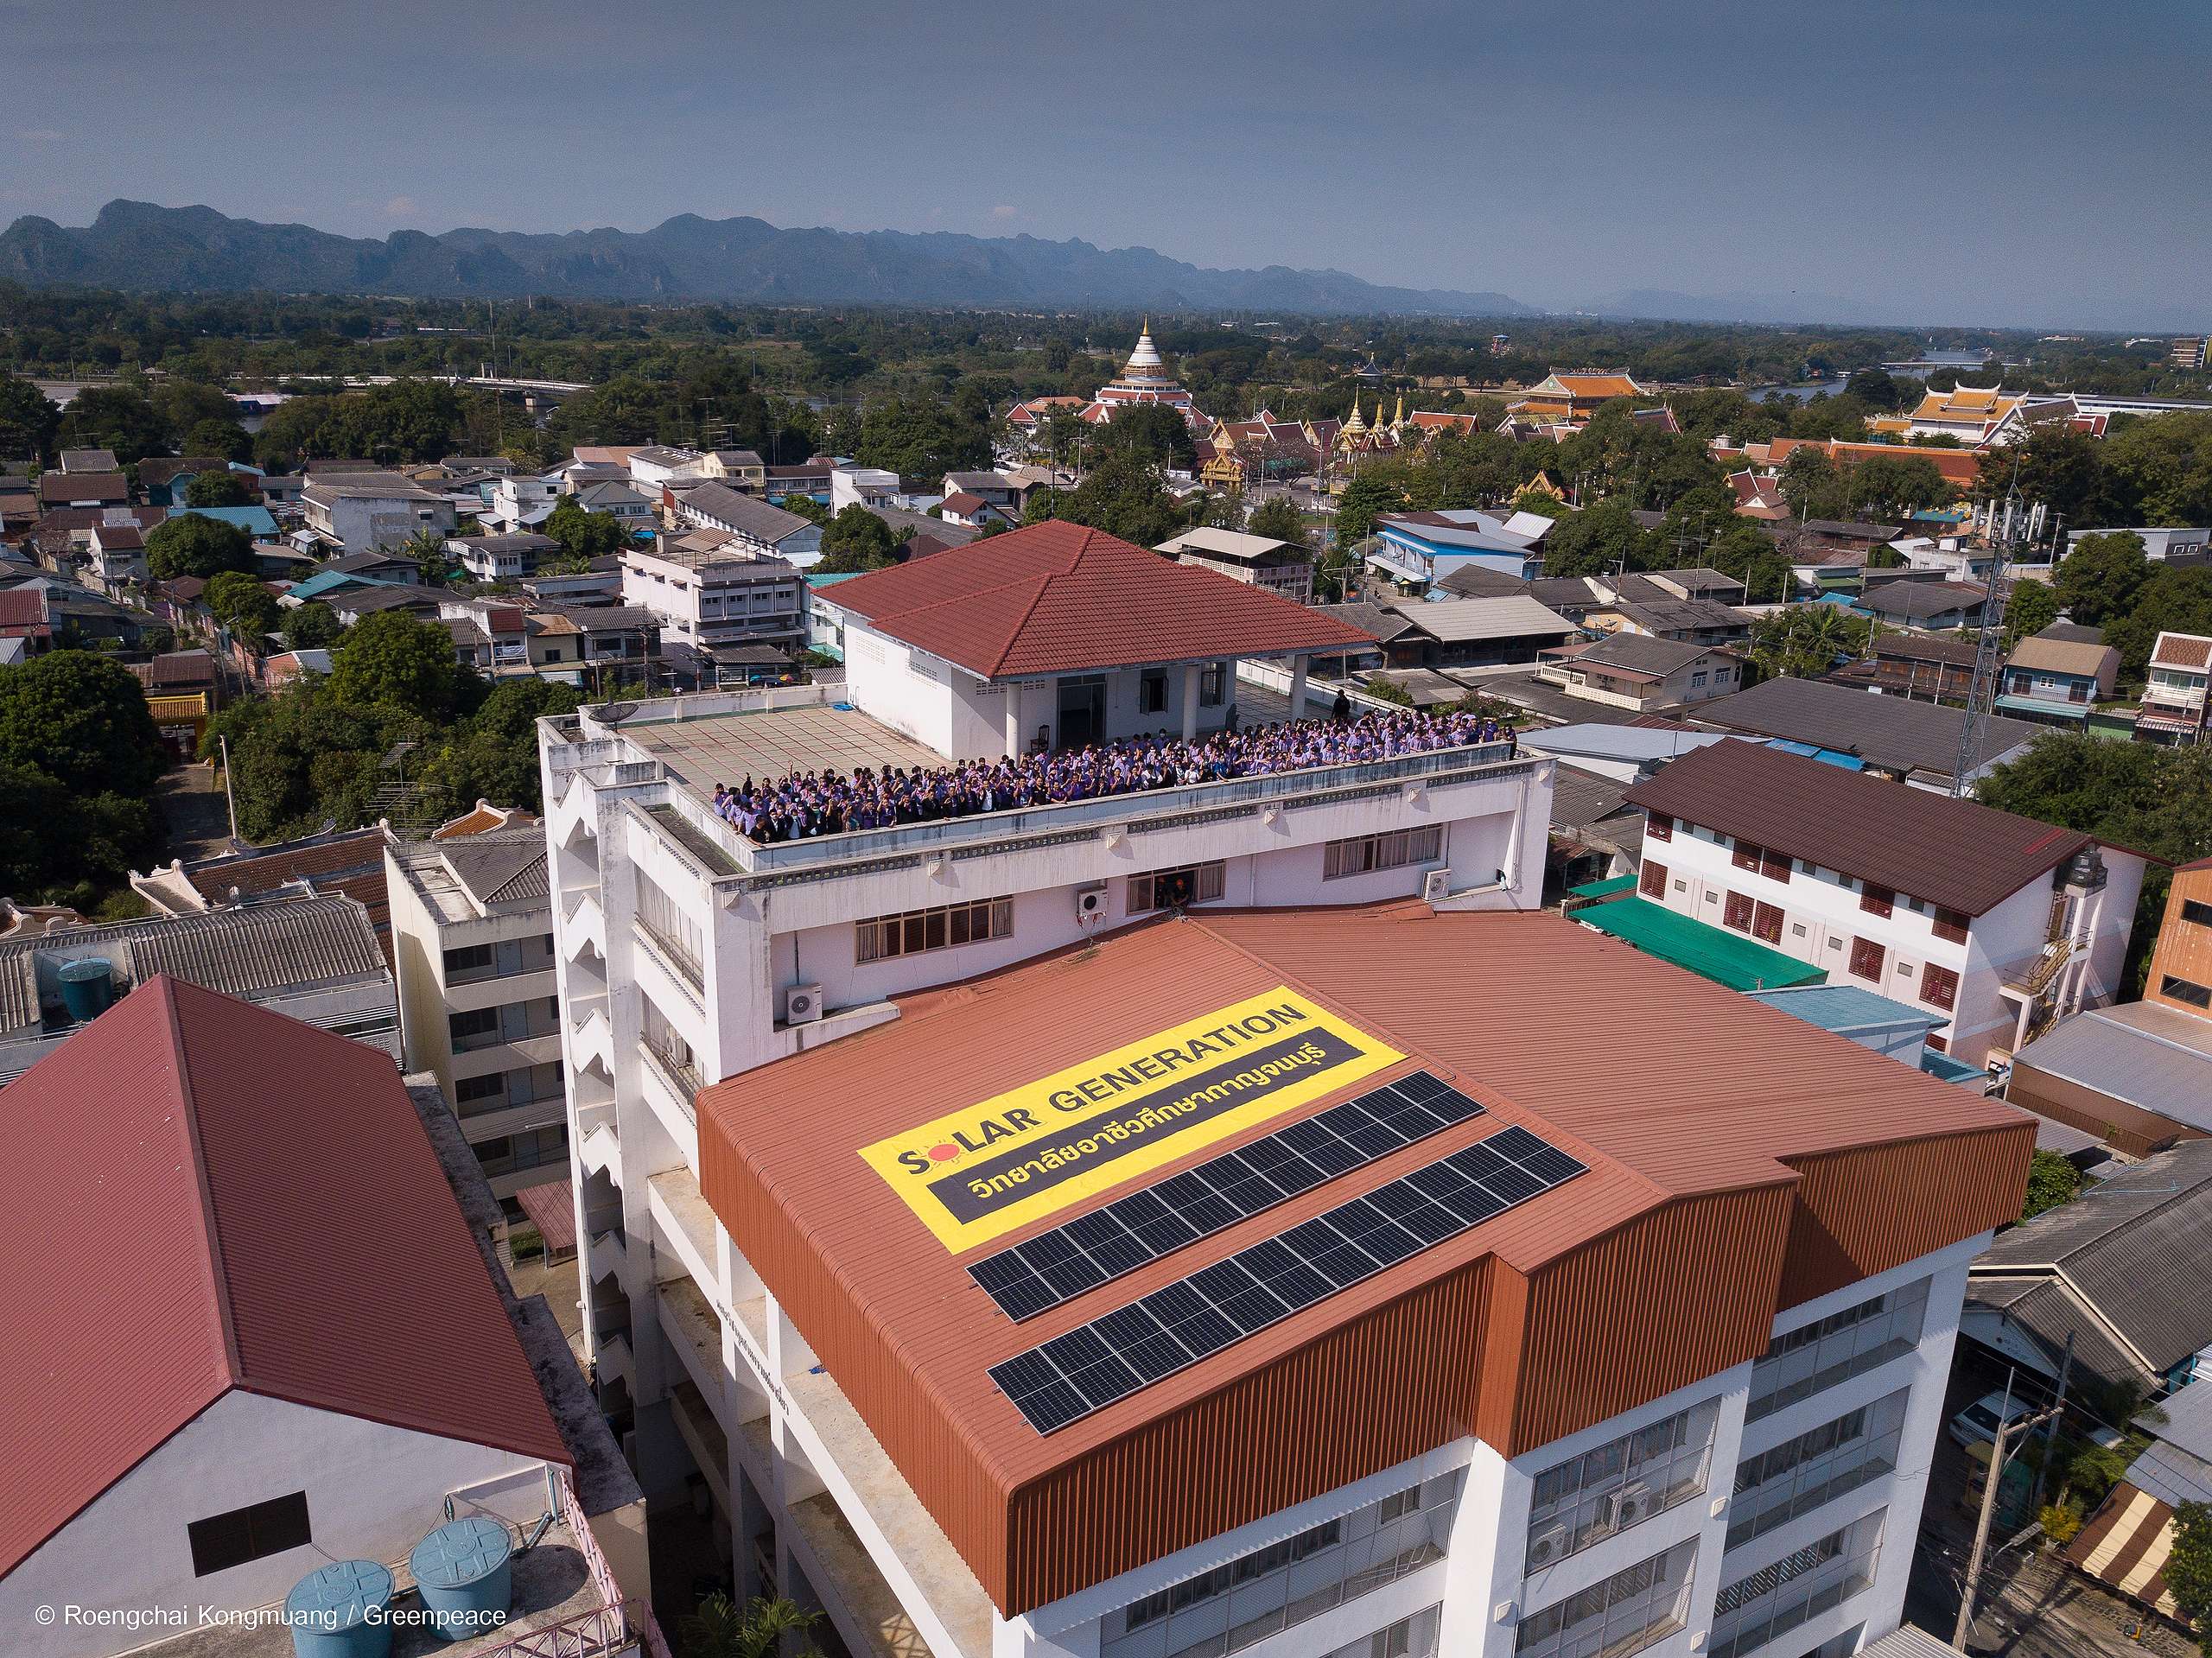 位於泰國北碧省（Kanchanaburi）的北碧職業學院於2020年12月啟動了太陽能發電，成為泰國第一家太陽能學院，這也是泰國第一家以太陽能發電的教育機構。